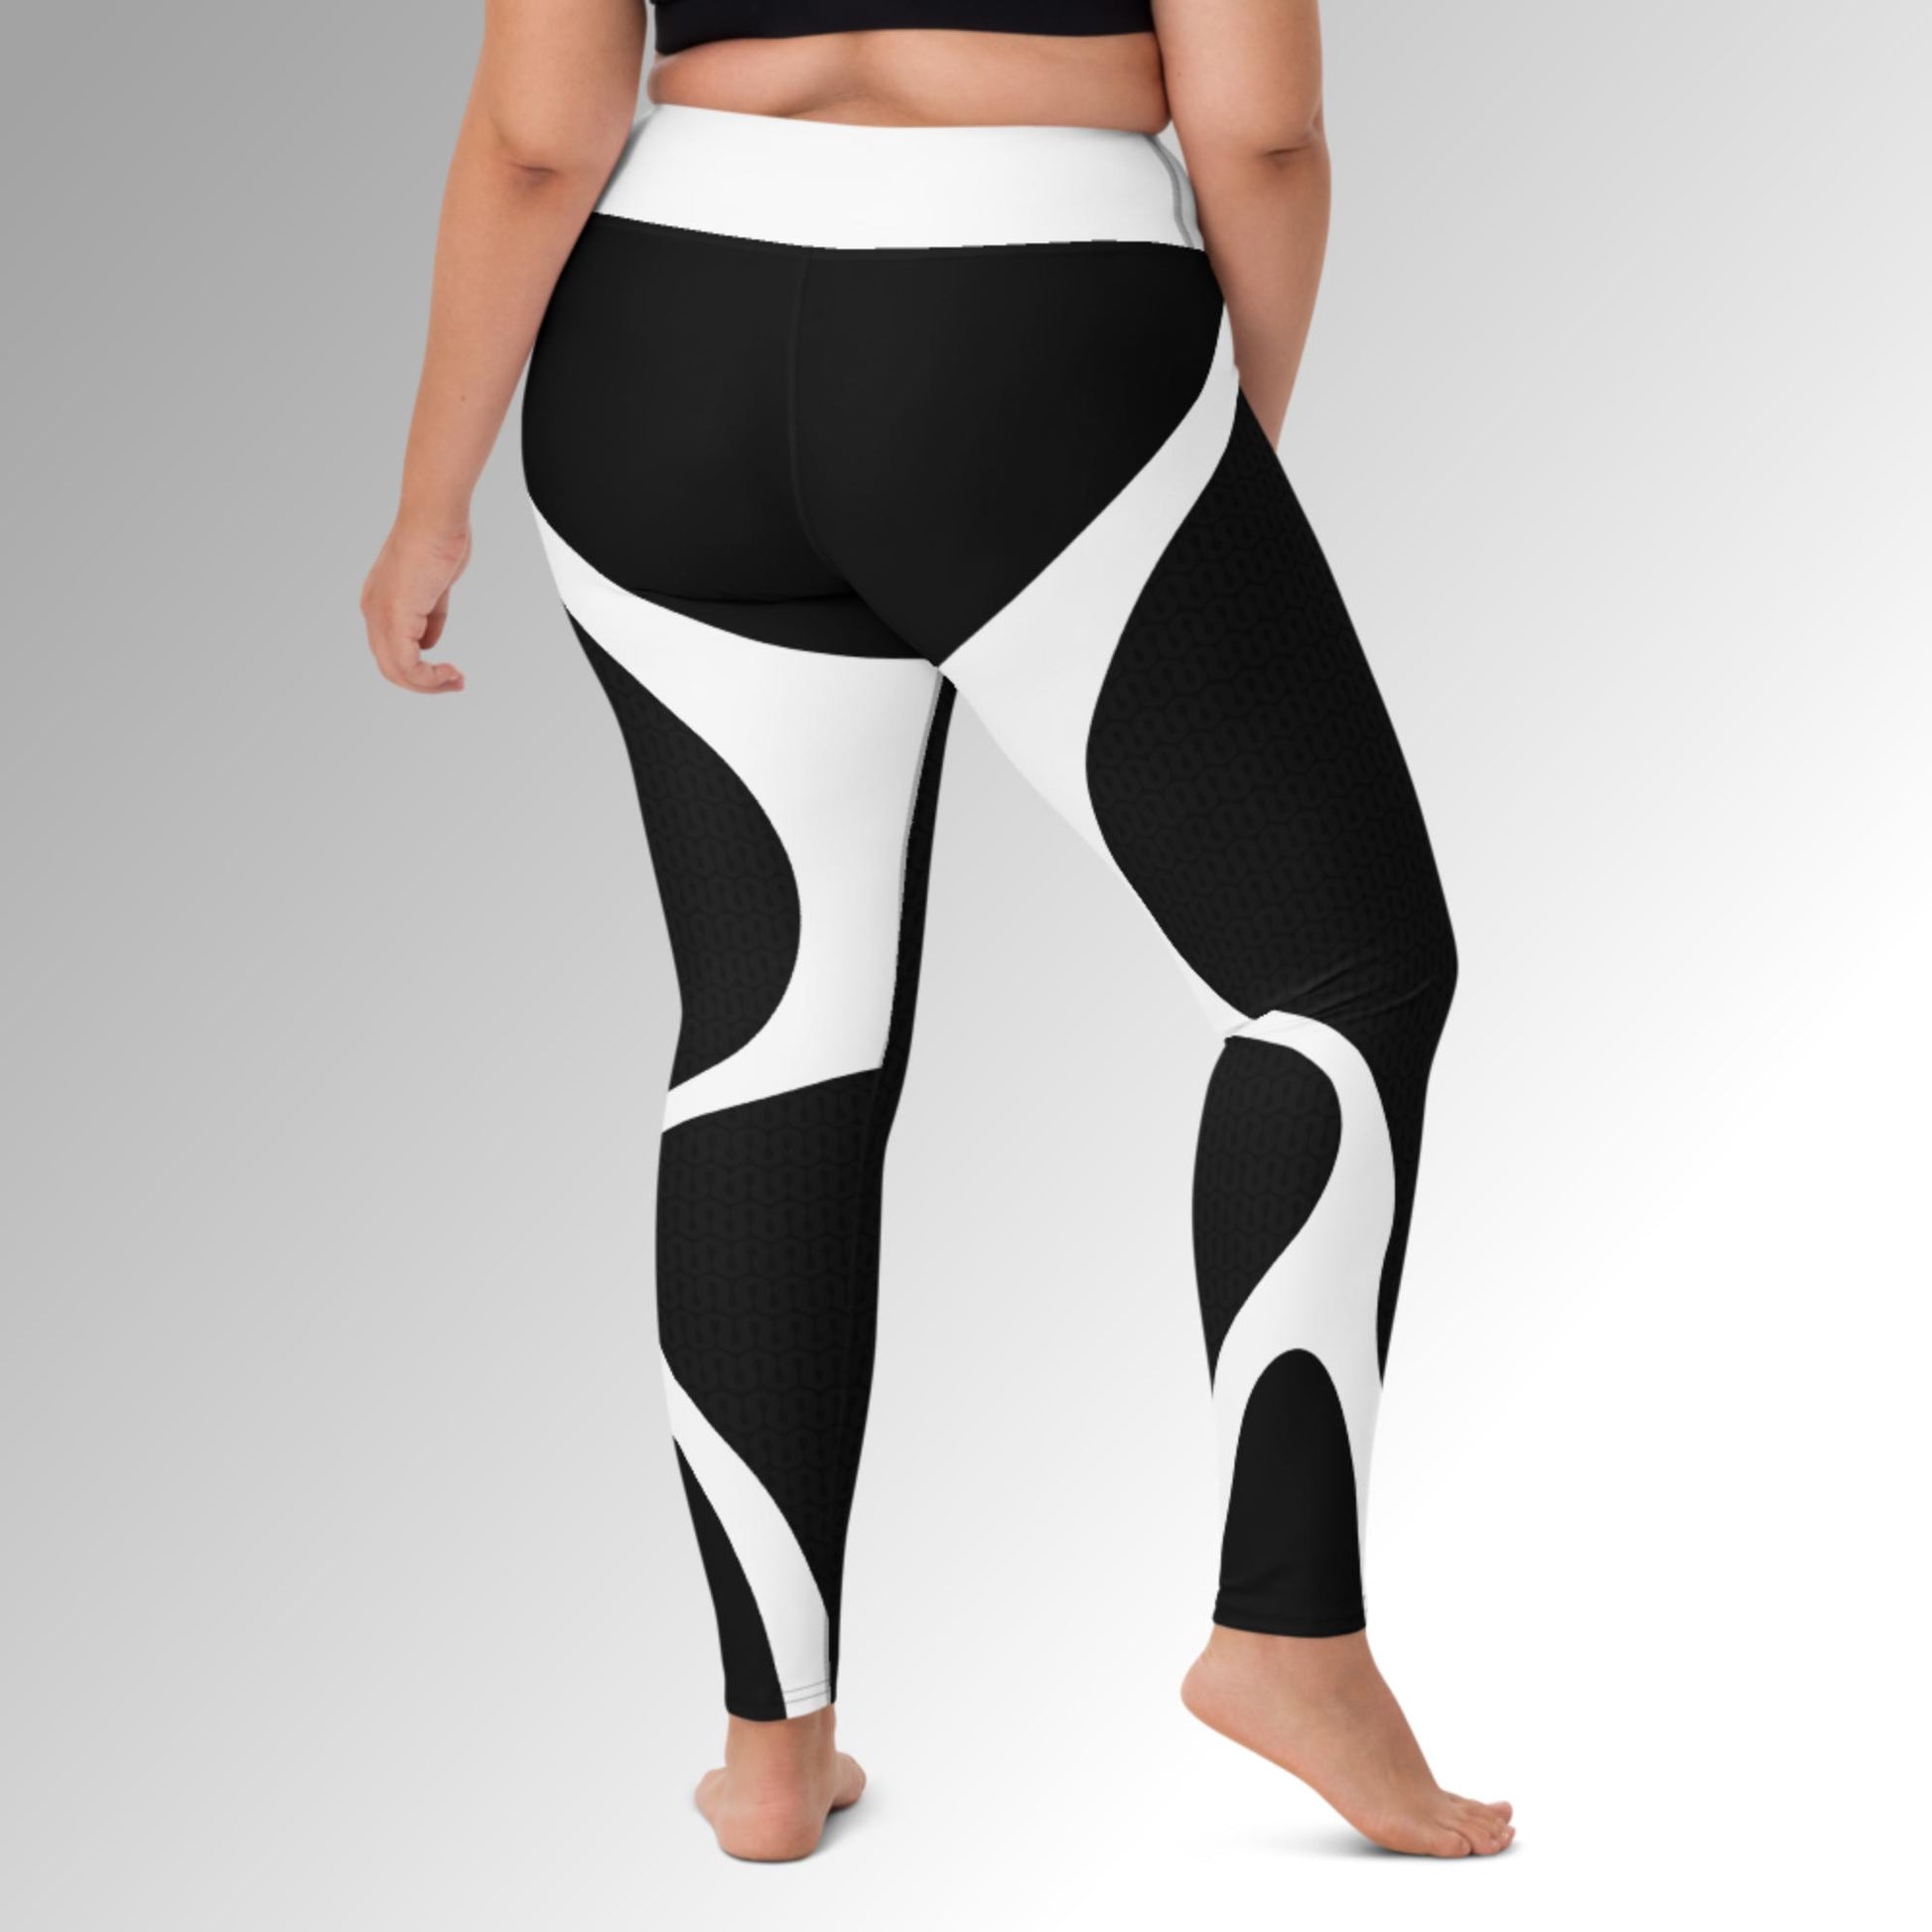 Baocc yoga pants Strethcy High Fitness Yoga Pants Printing